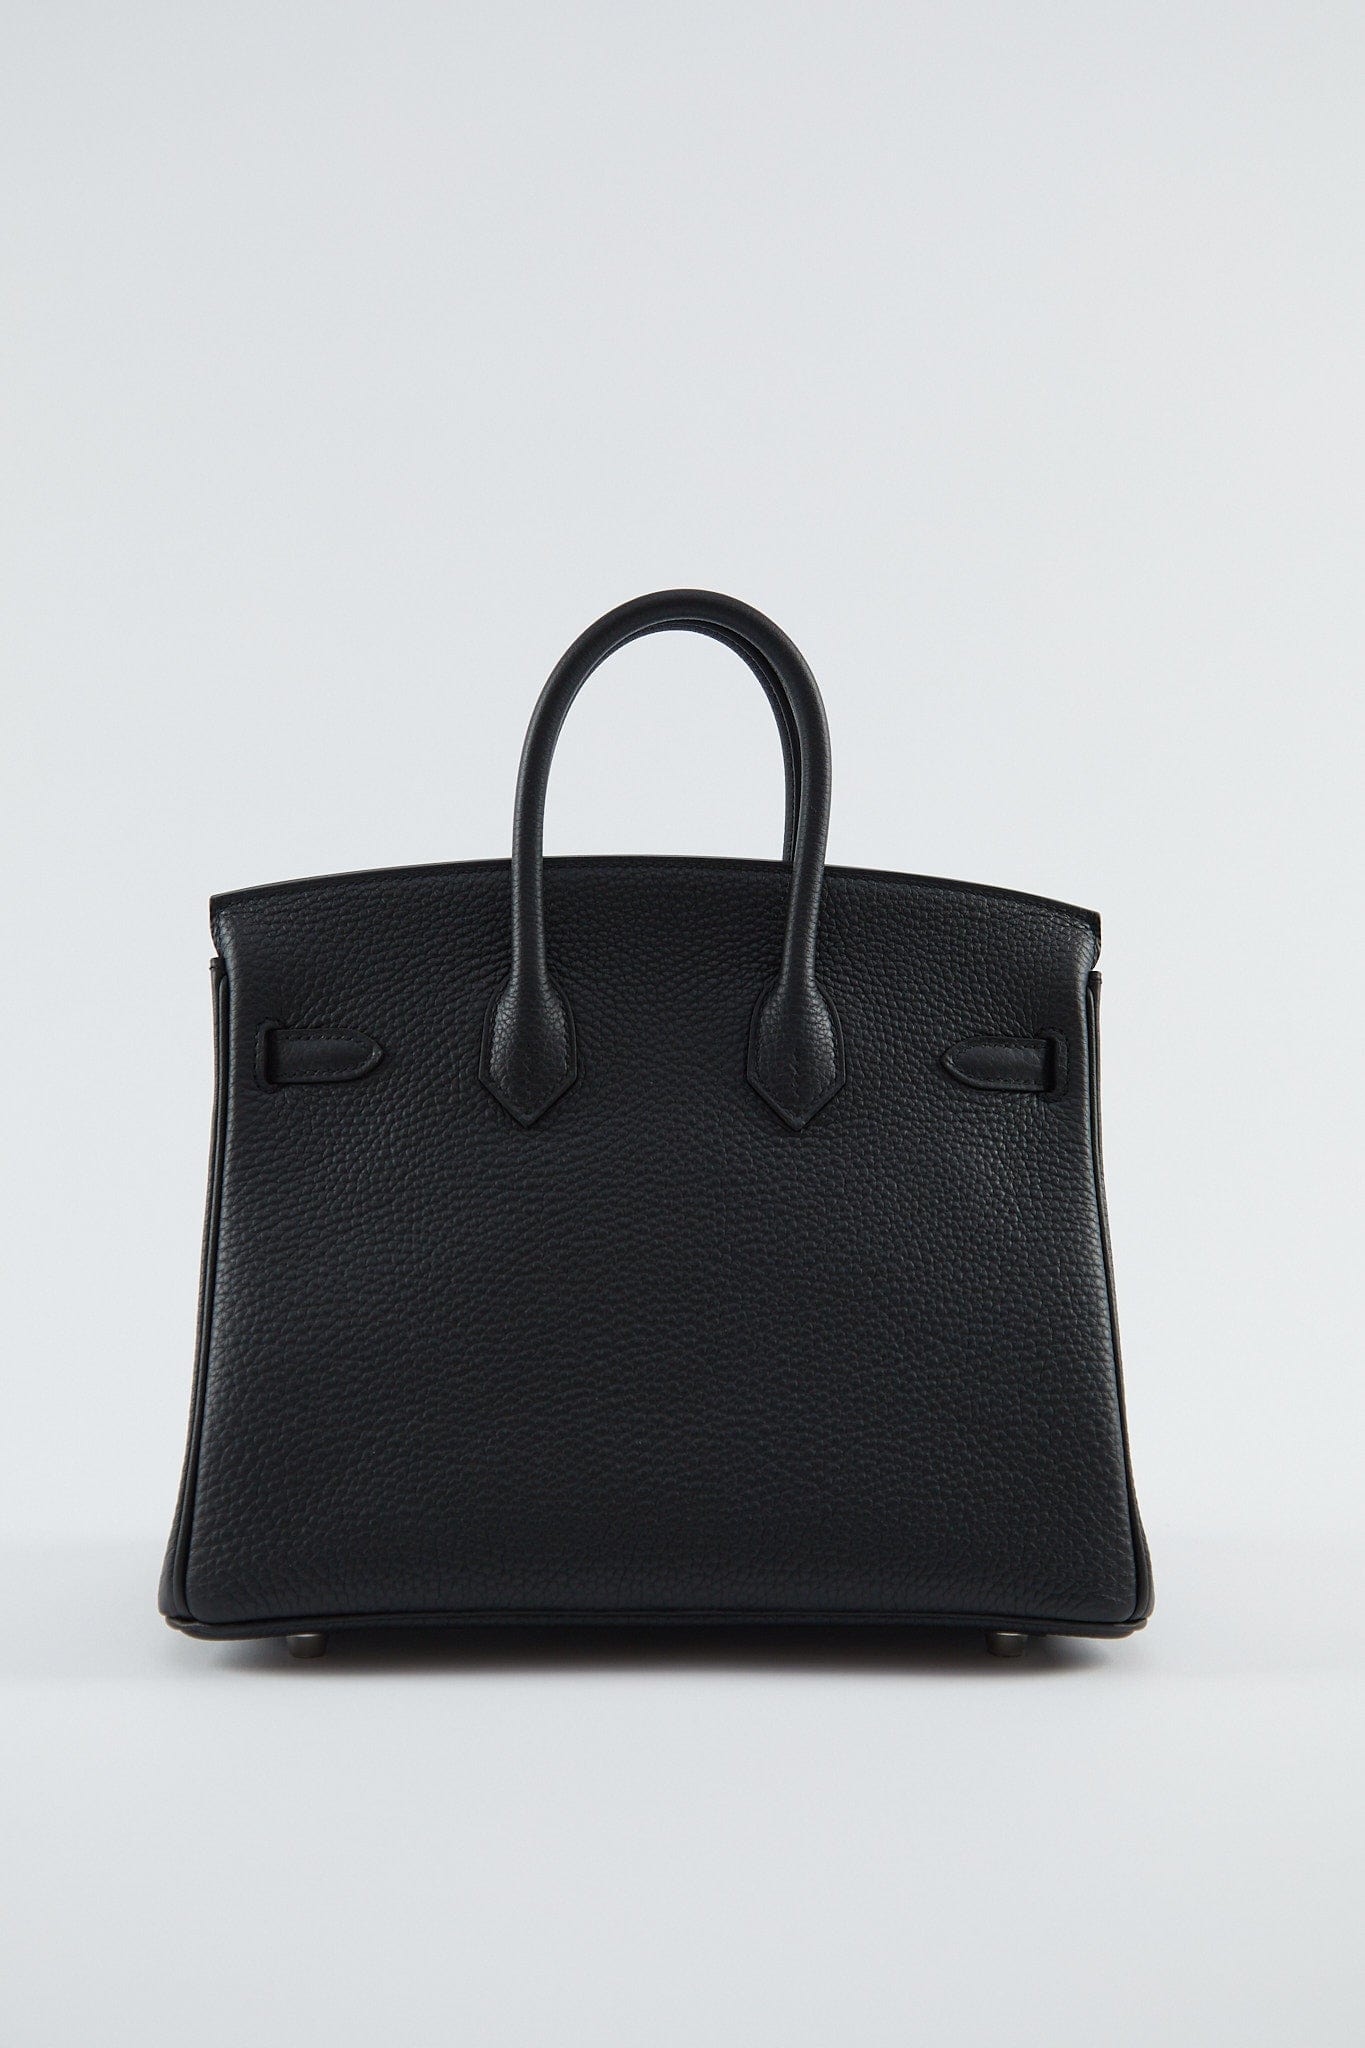 LuxuryVault HERMÈS BIRKIN 25CM BLACK Togo Leather with Palladium Hardware